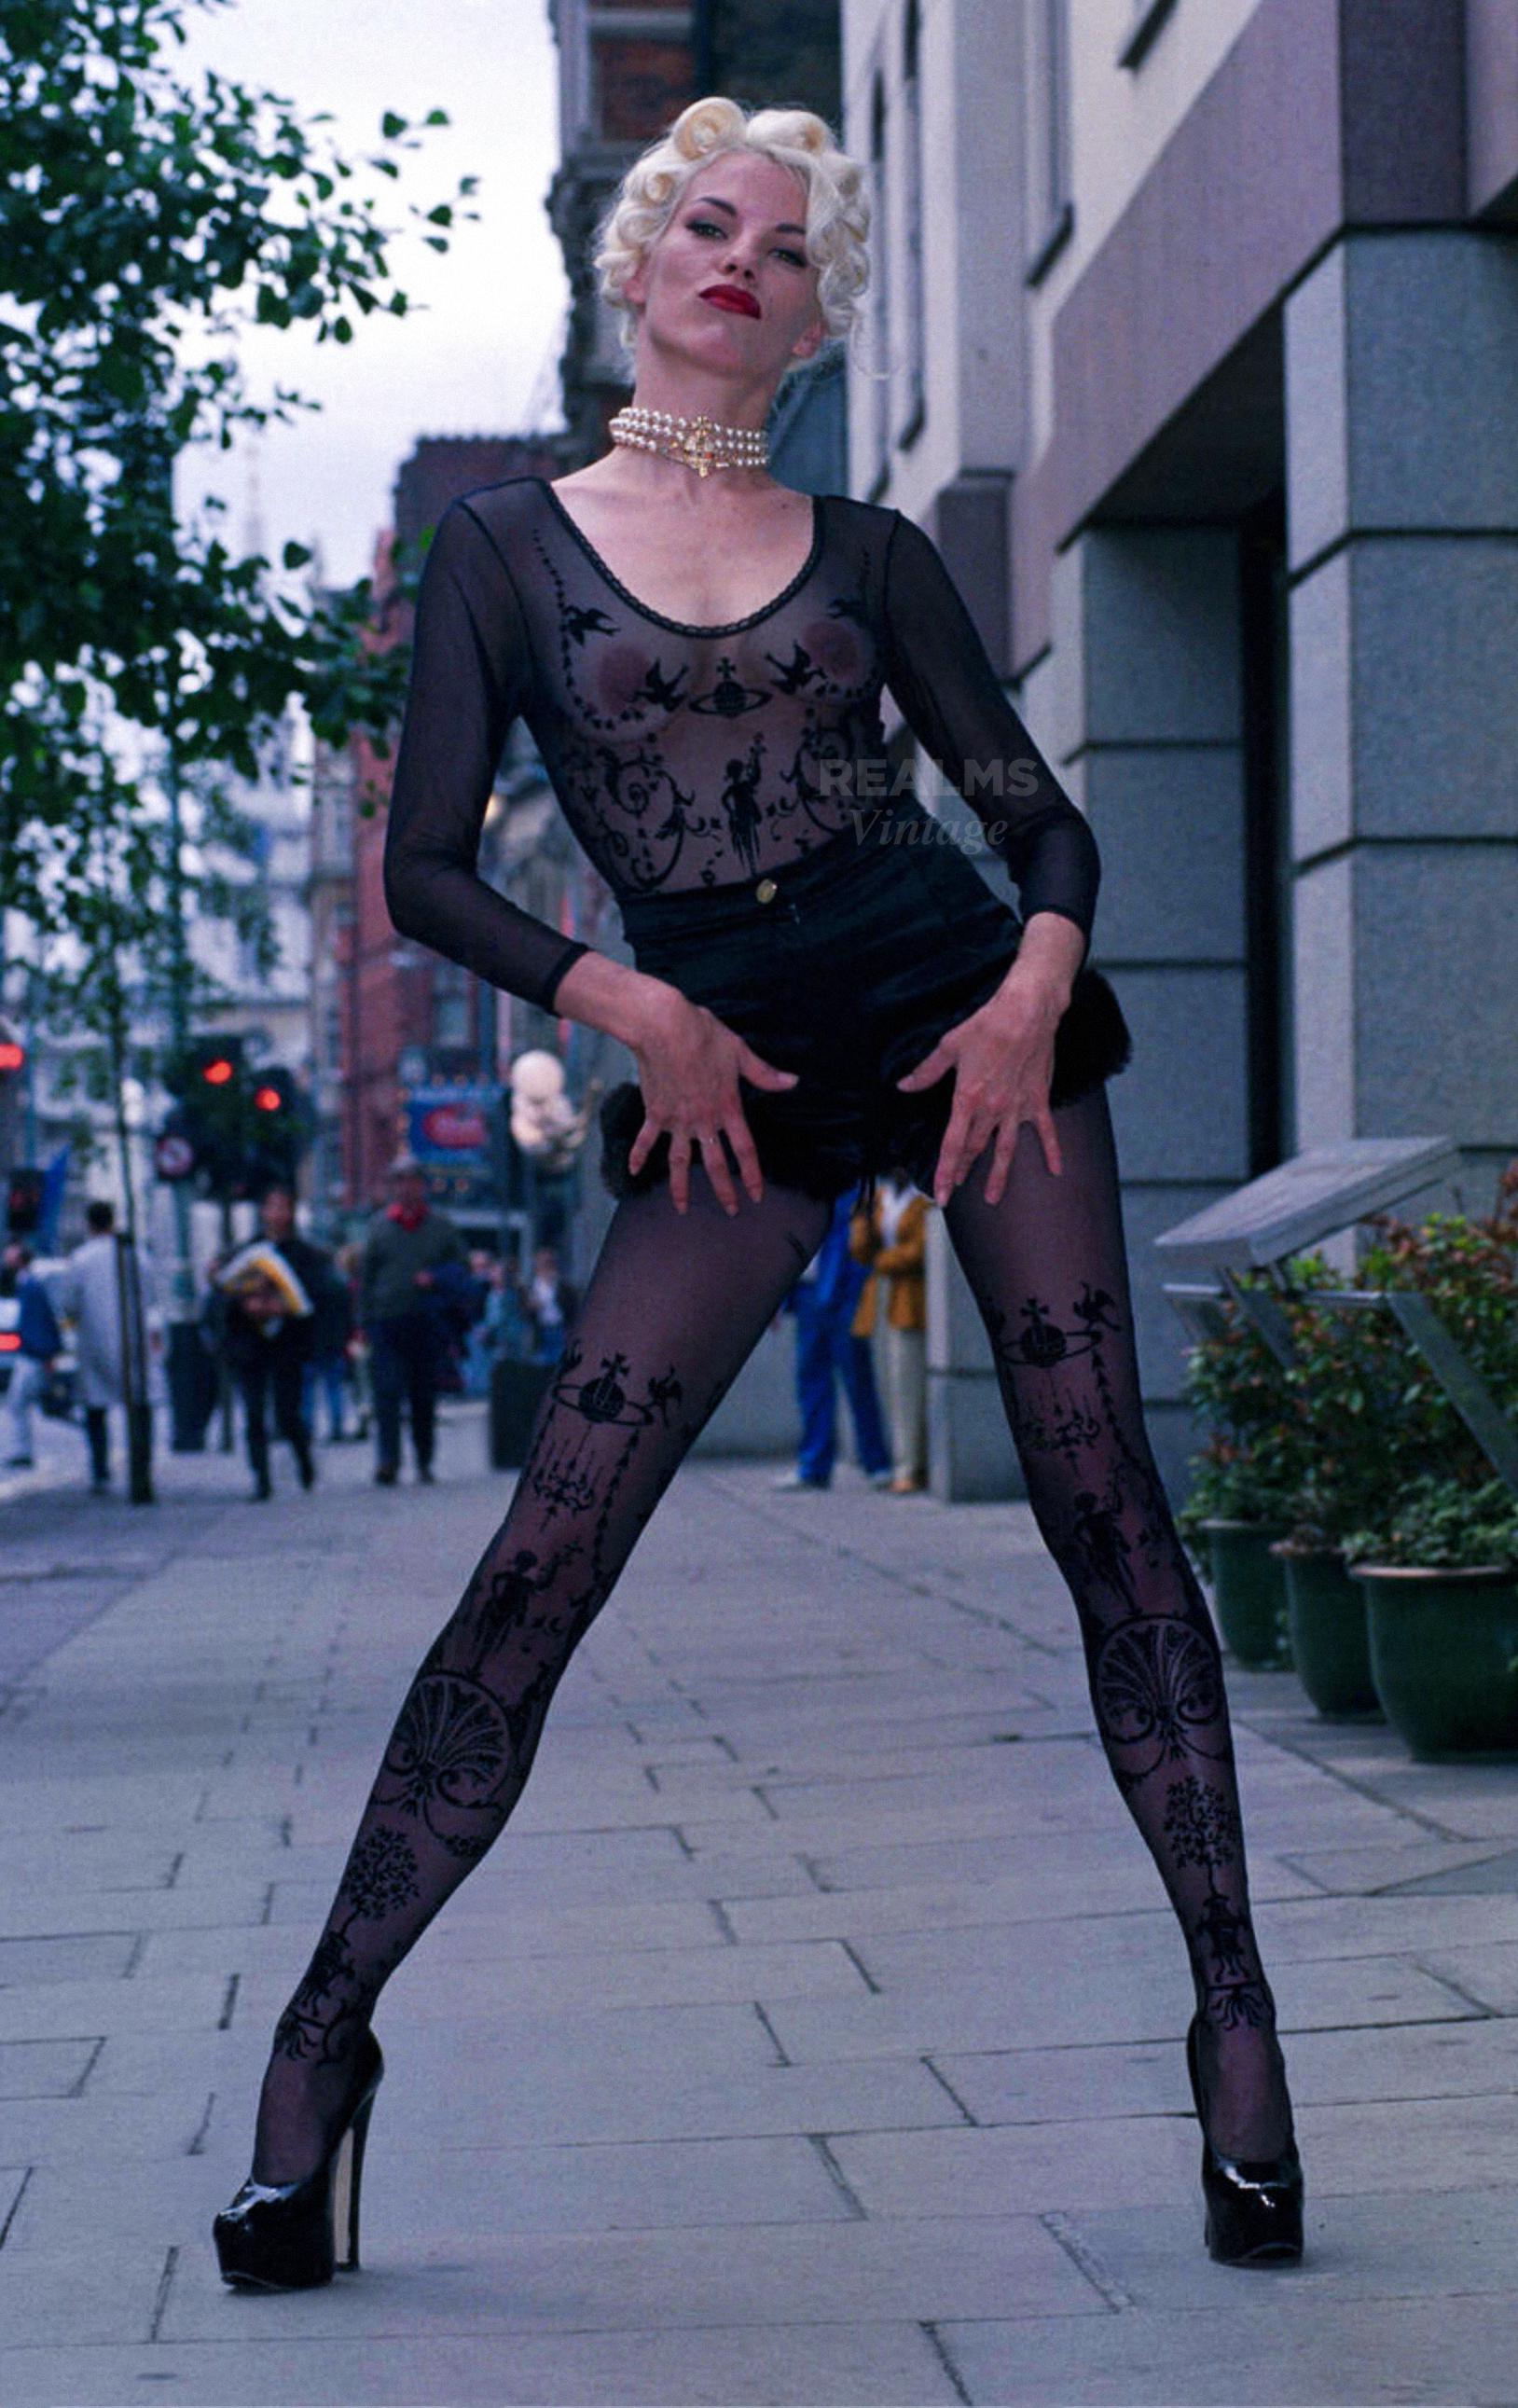 
Der atemberaubende Vivienne Westwood Boulle-Bodysuit von 1992. Ikonisches Vivienne Westwood Sammlerstück.
Sexy halbtransparenter schwarzer Body mit dem kultigen Boulle-Druck.  Das MATERIAL ist weich und dehnbar, formschlüssig. 
markierte Größe